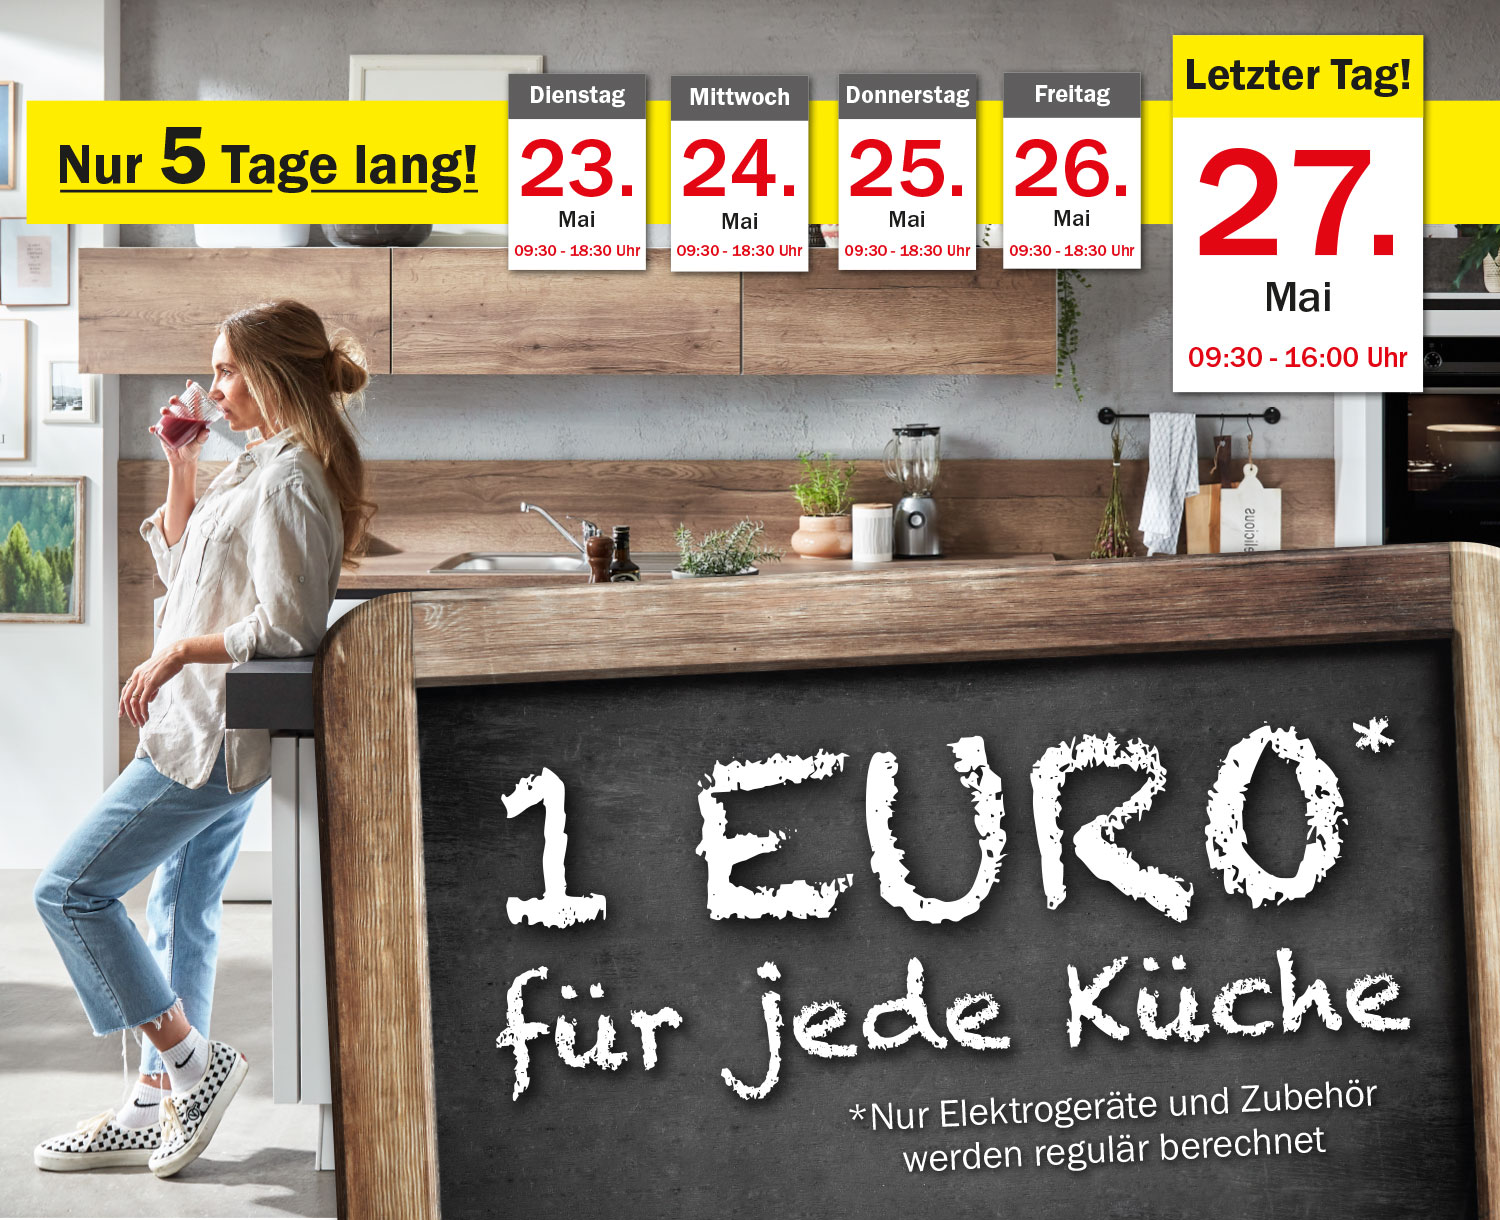 1 Euro* für jede Küche bei Möbel Mit in Wittenberg!